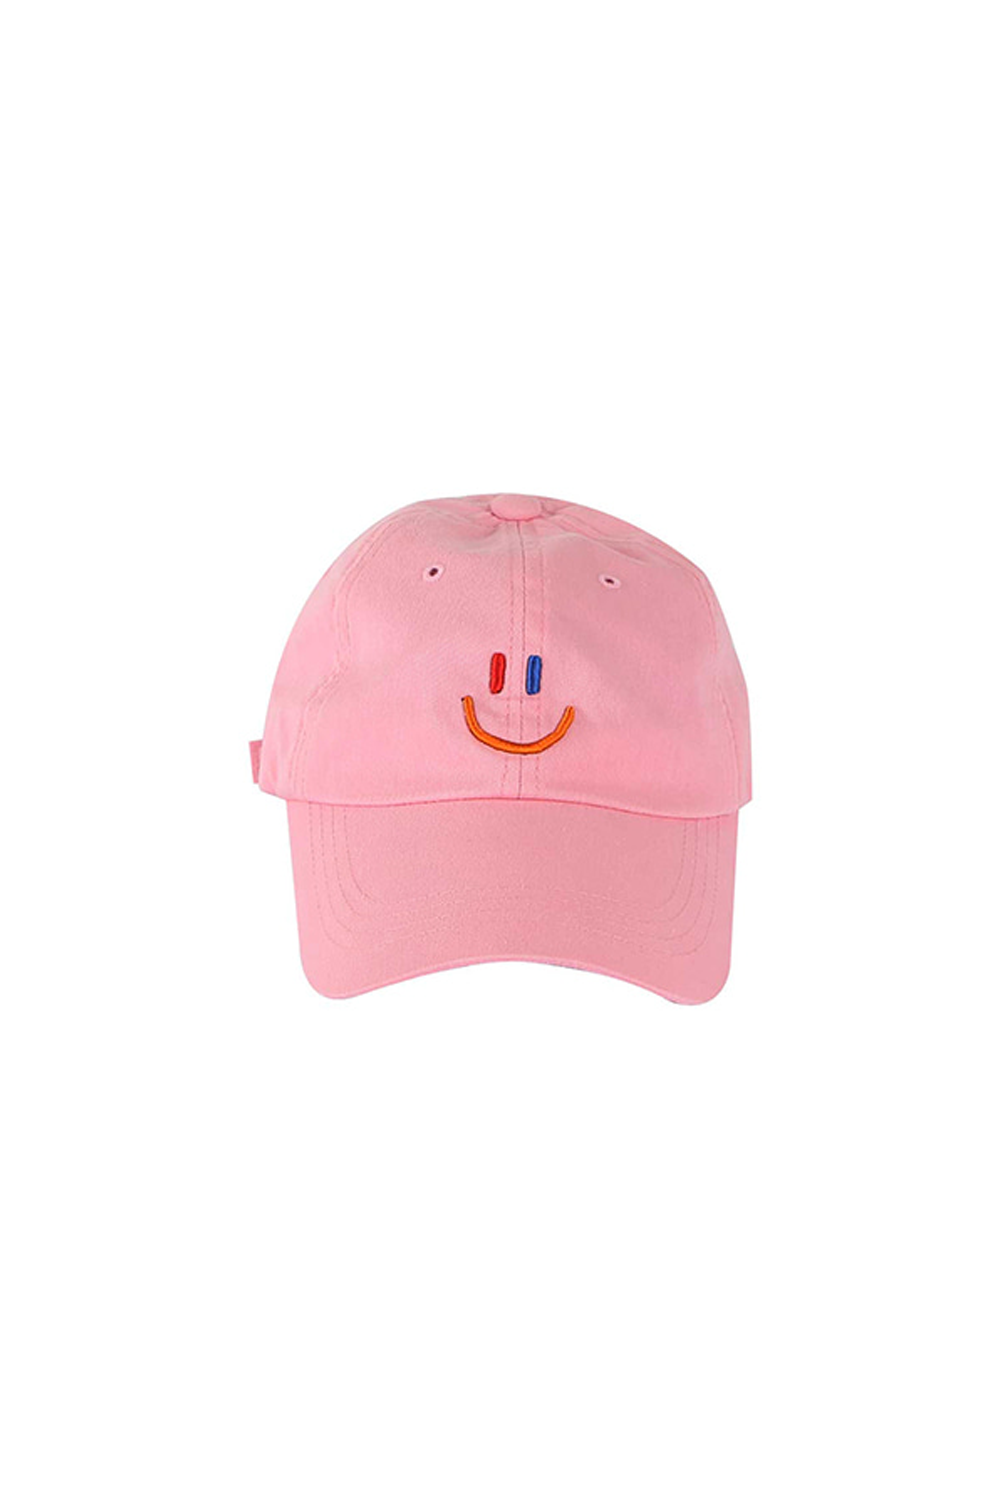 LaLa Smile Ball Cap [Pink]